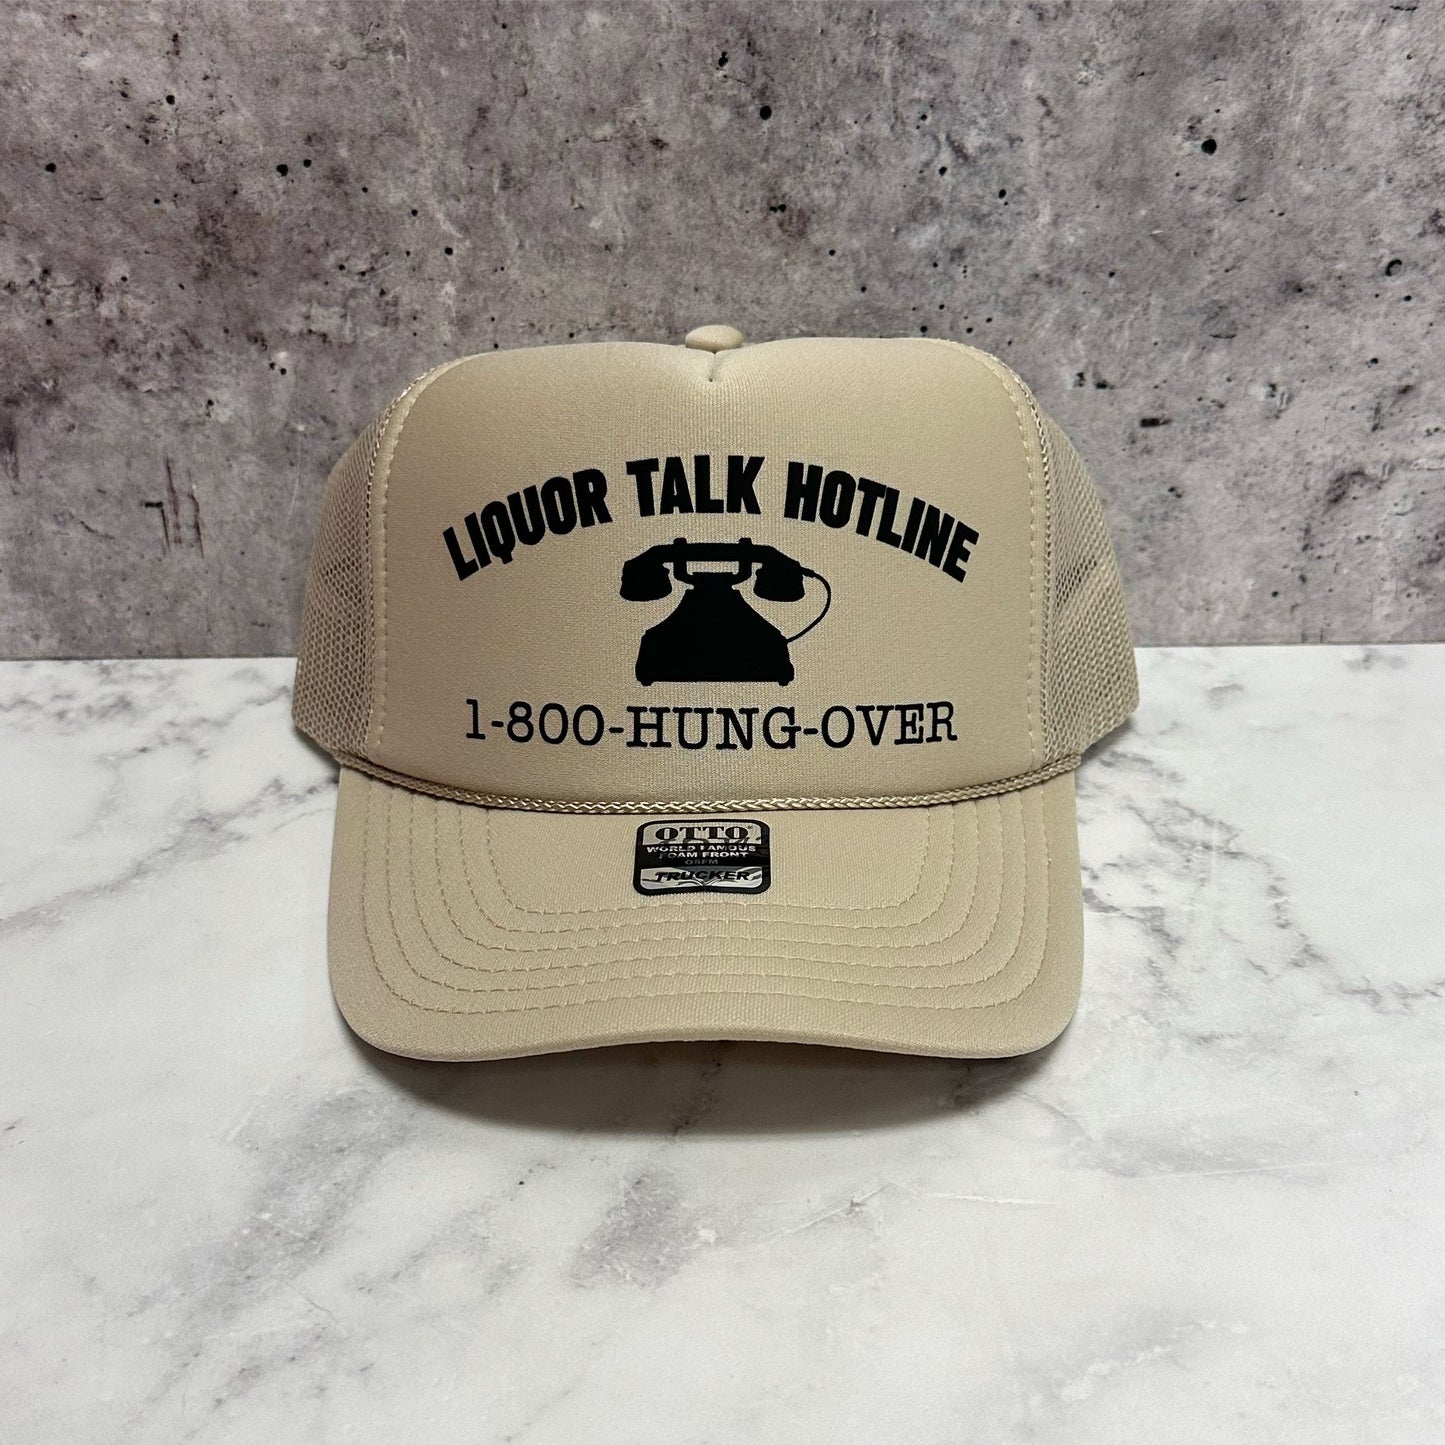 Liquor Talk Hotline Trucker Hat